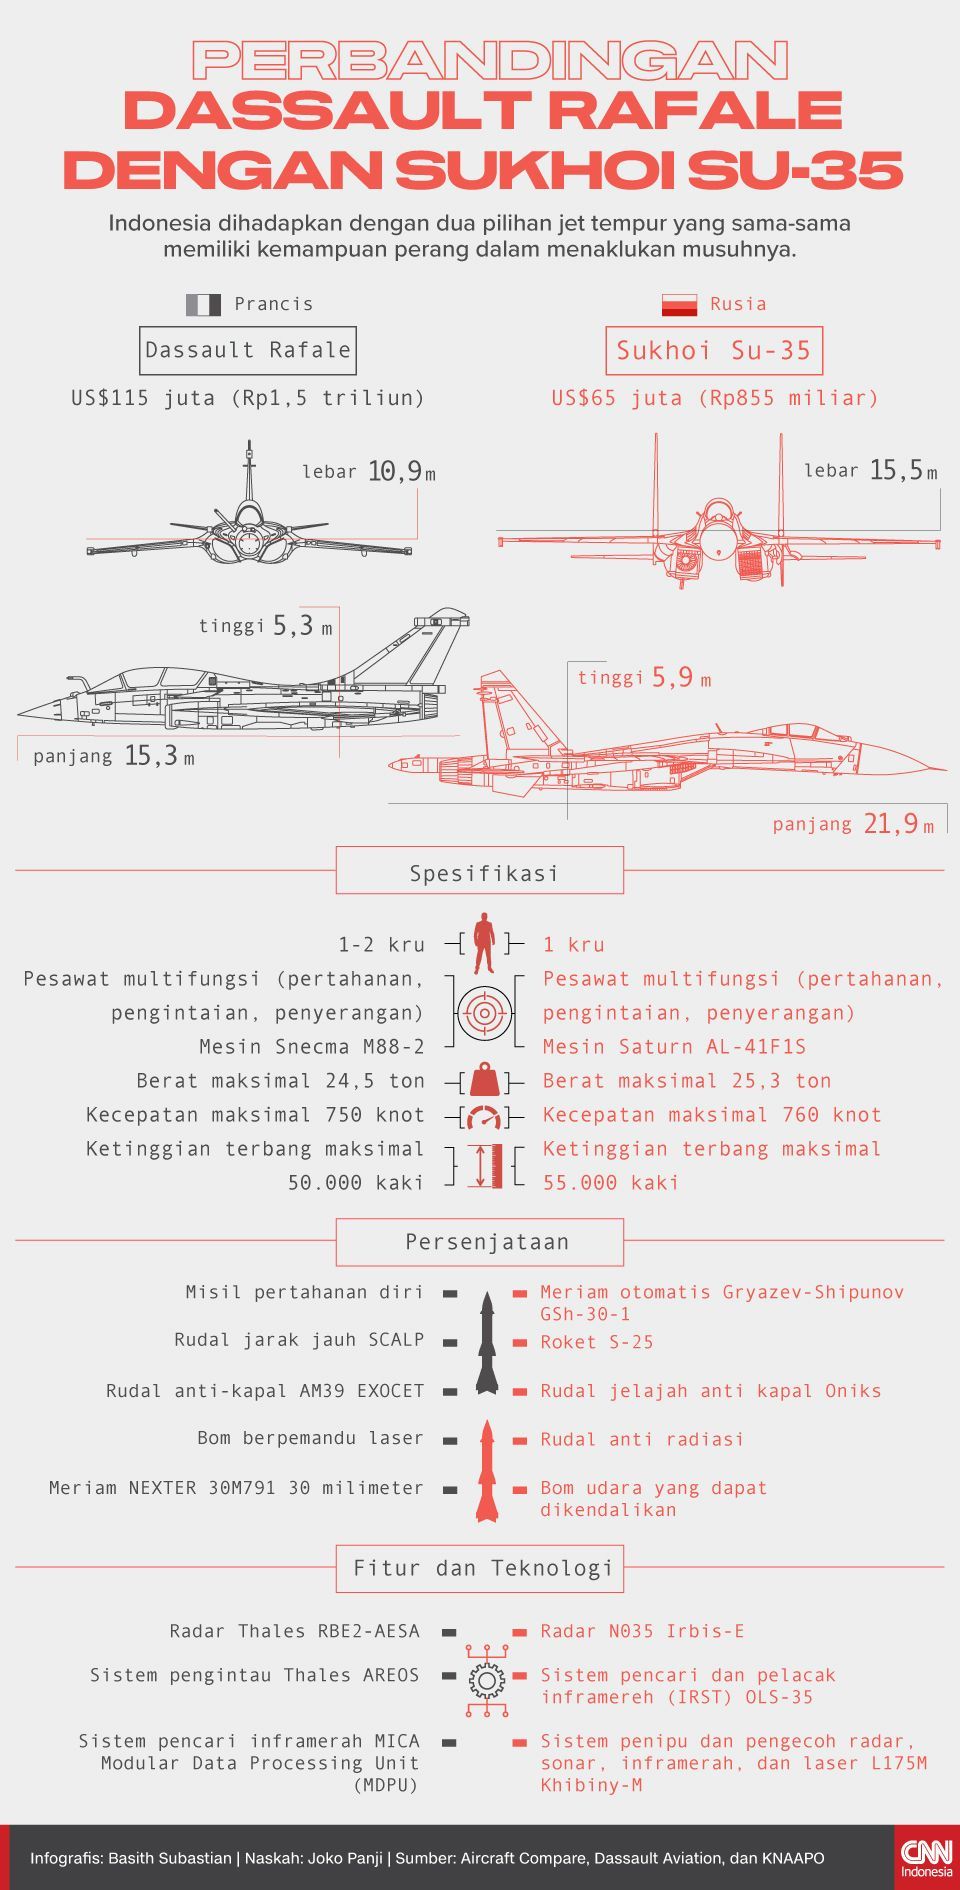 Infografis Perbandingan Dassault Rafale dengan Sukhoi SU-35